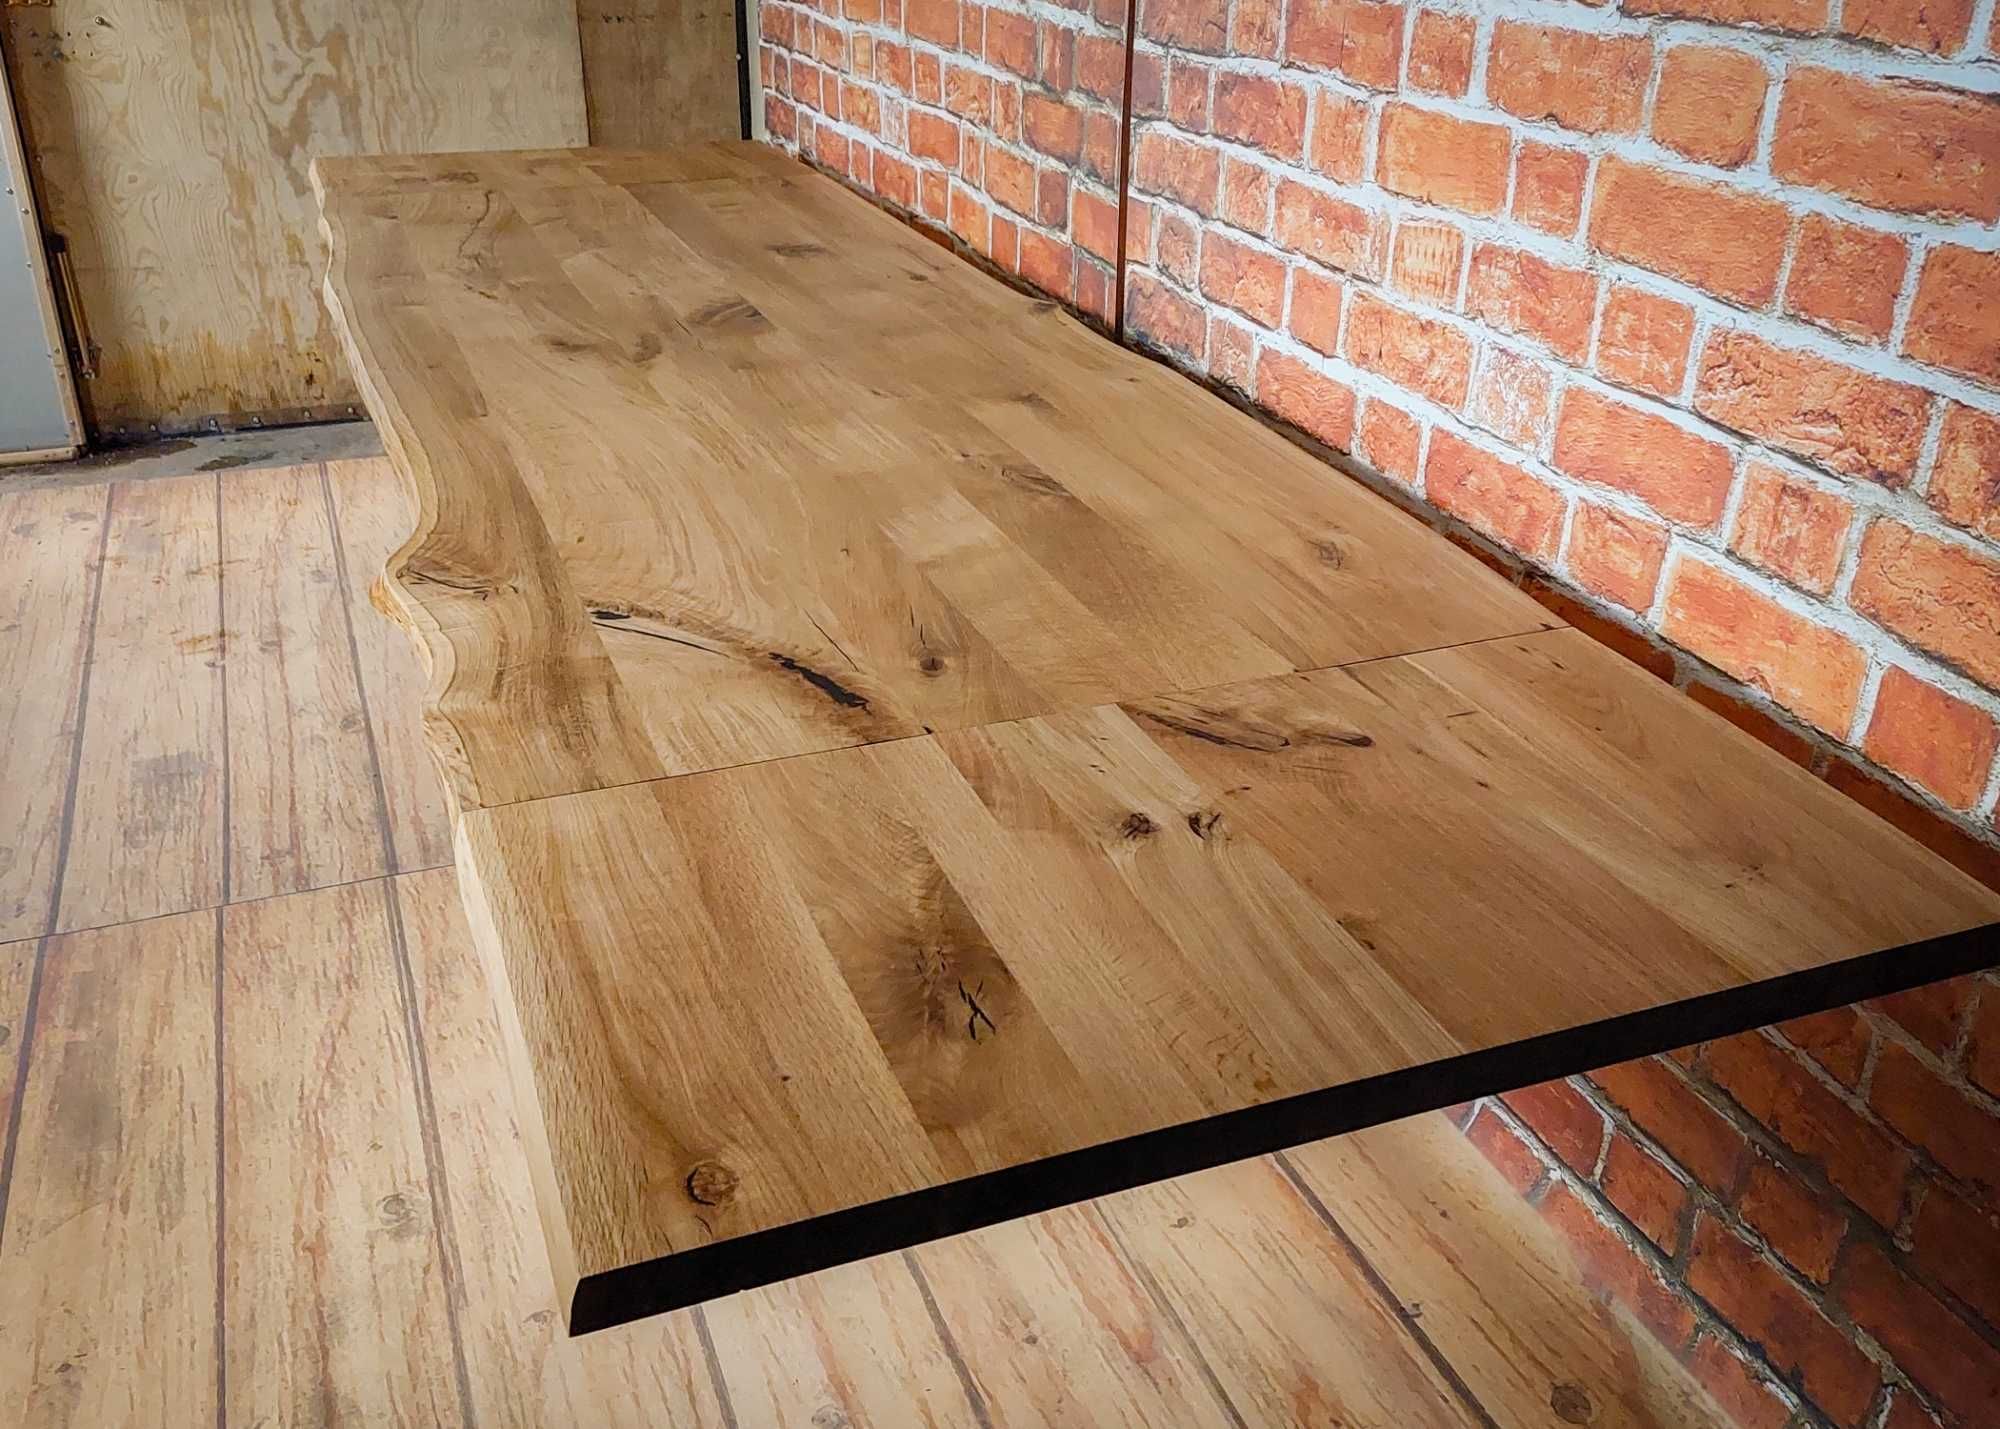 Stół Pająk Dębowy LOFT, 100% Lite Drewno DĄB, Rozkładany.